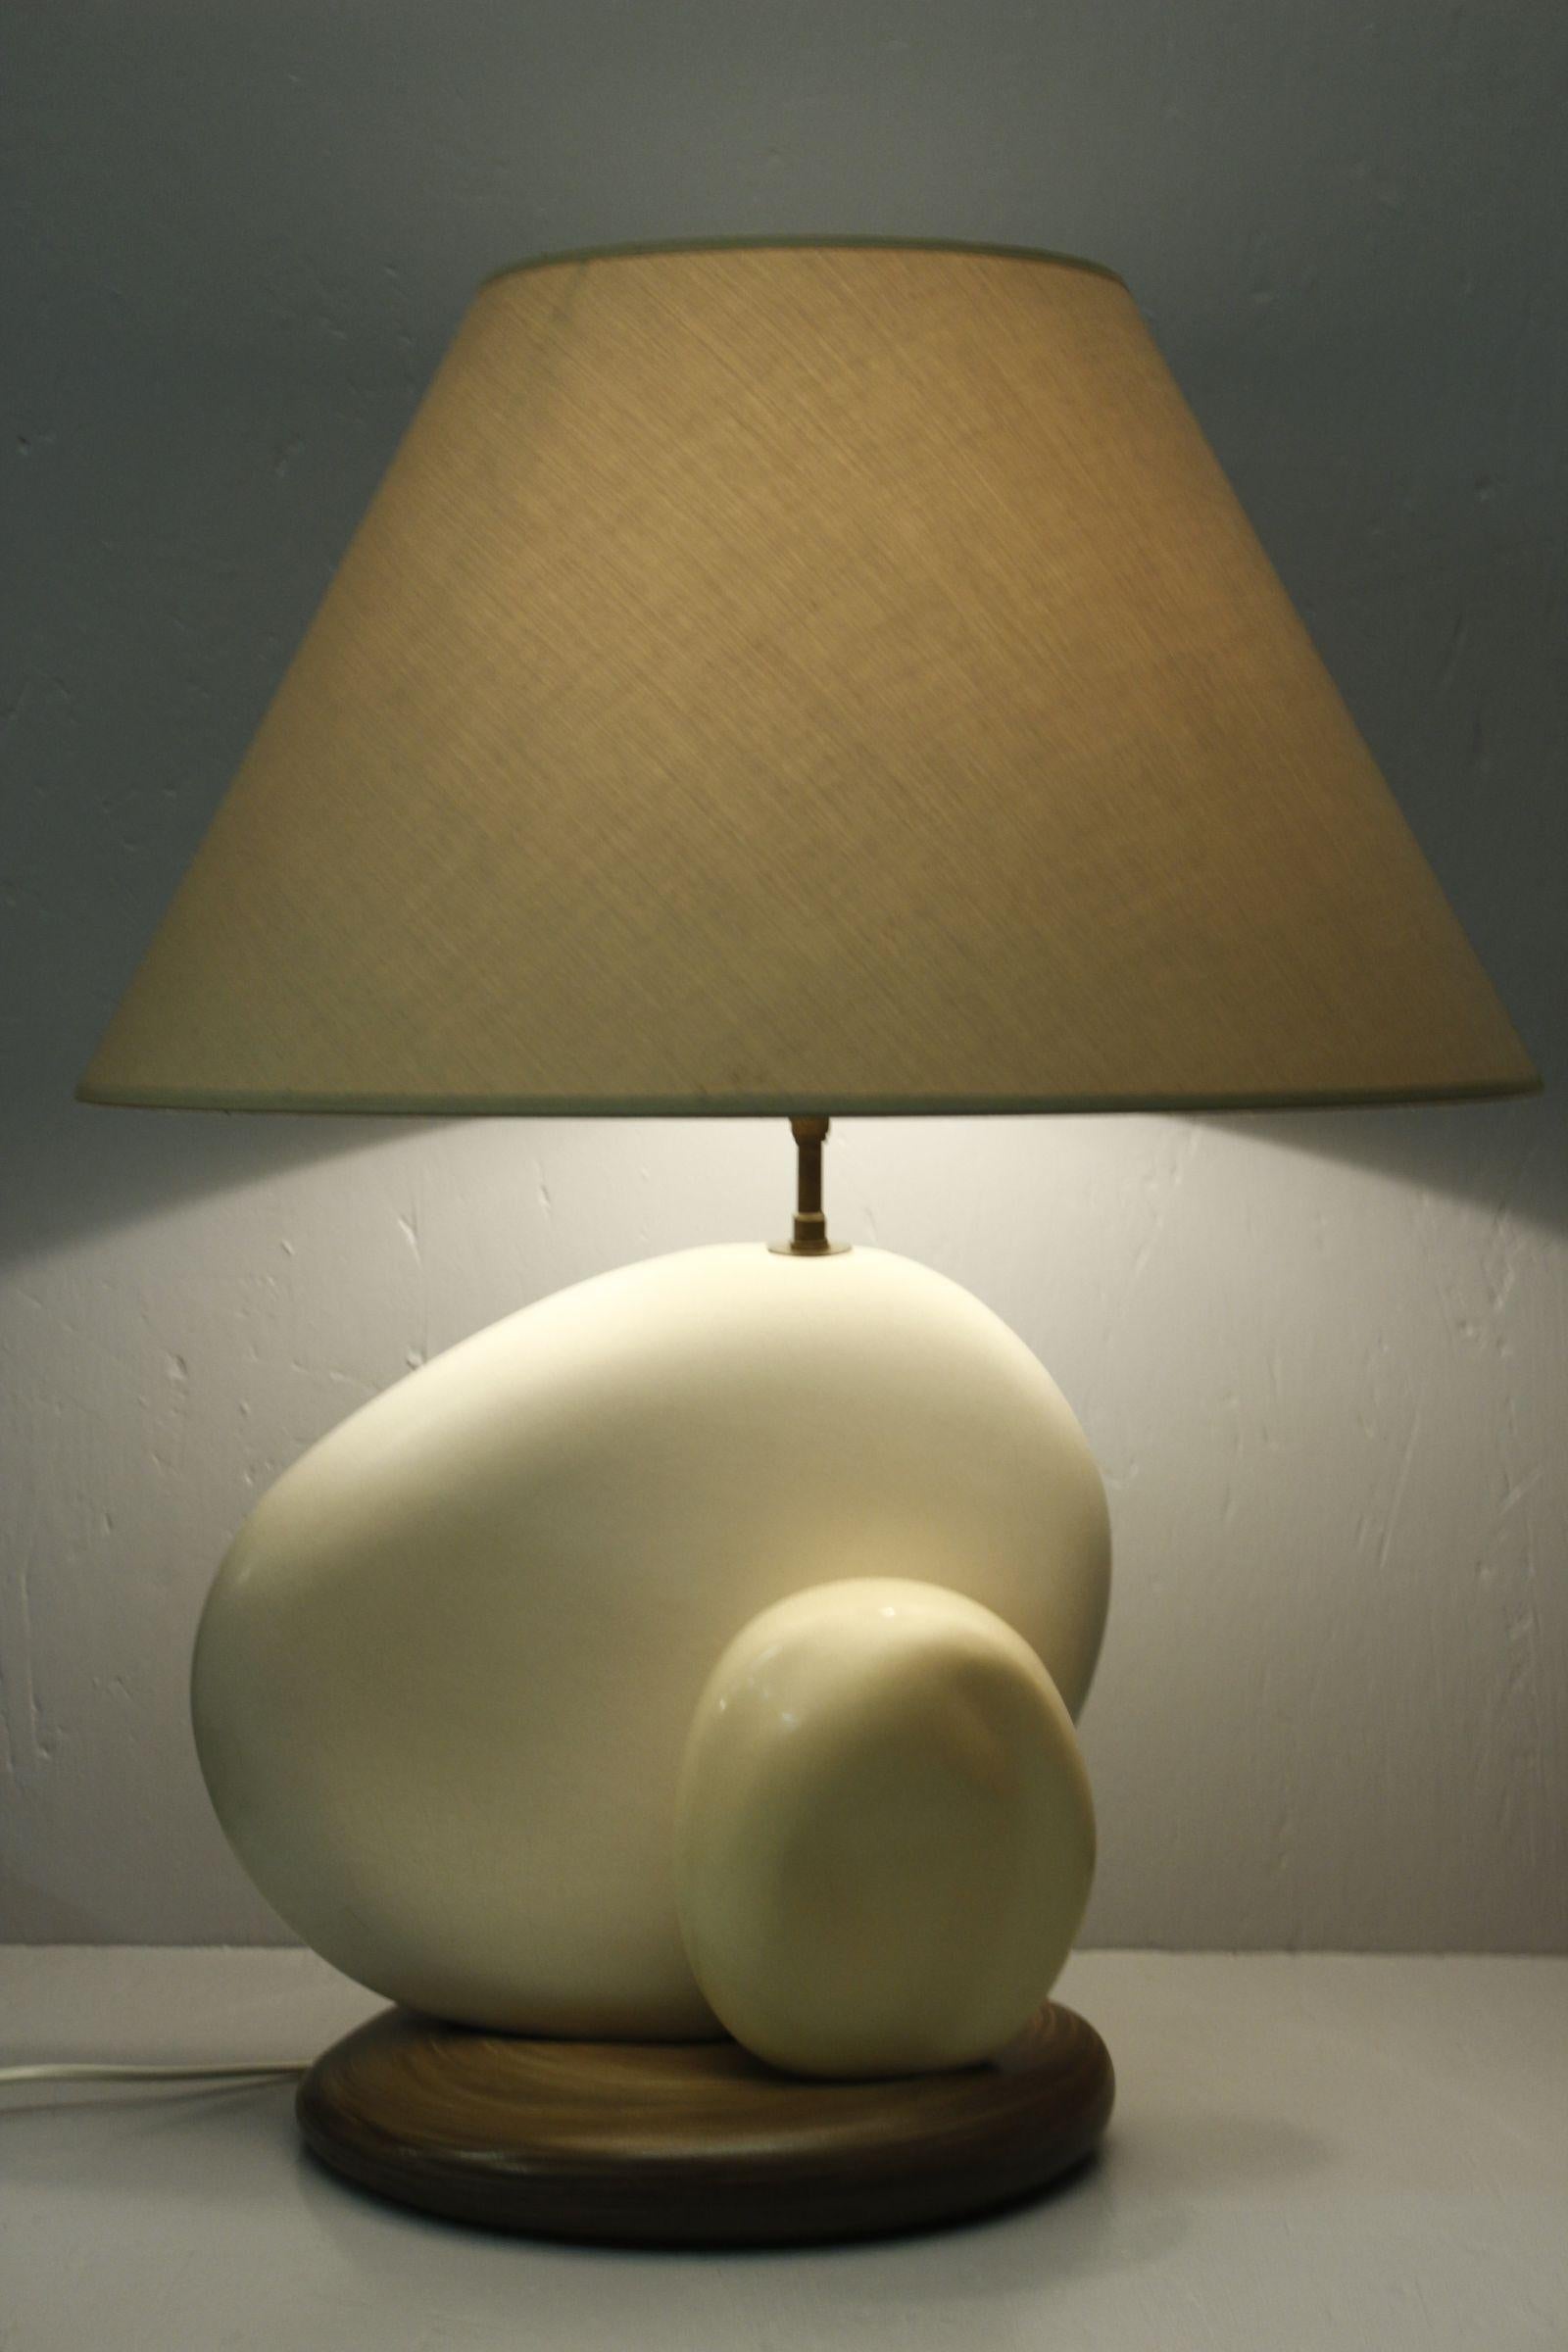 Grande lampe à galets en céramique du designer et lampiste français François Chatain, vers 1980. 

En blanc doux et émail brun, avec un abat-jour original qui peut être incliné grâce à un pivot situé sous le culot de l'ampoule, ce qui permet de